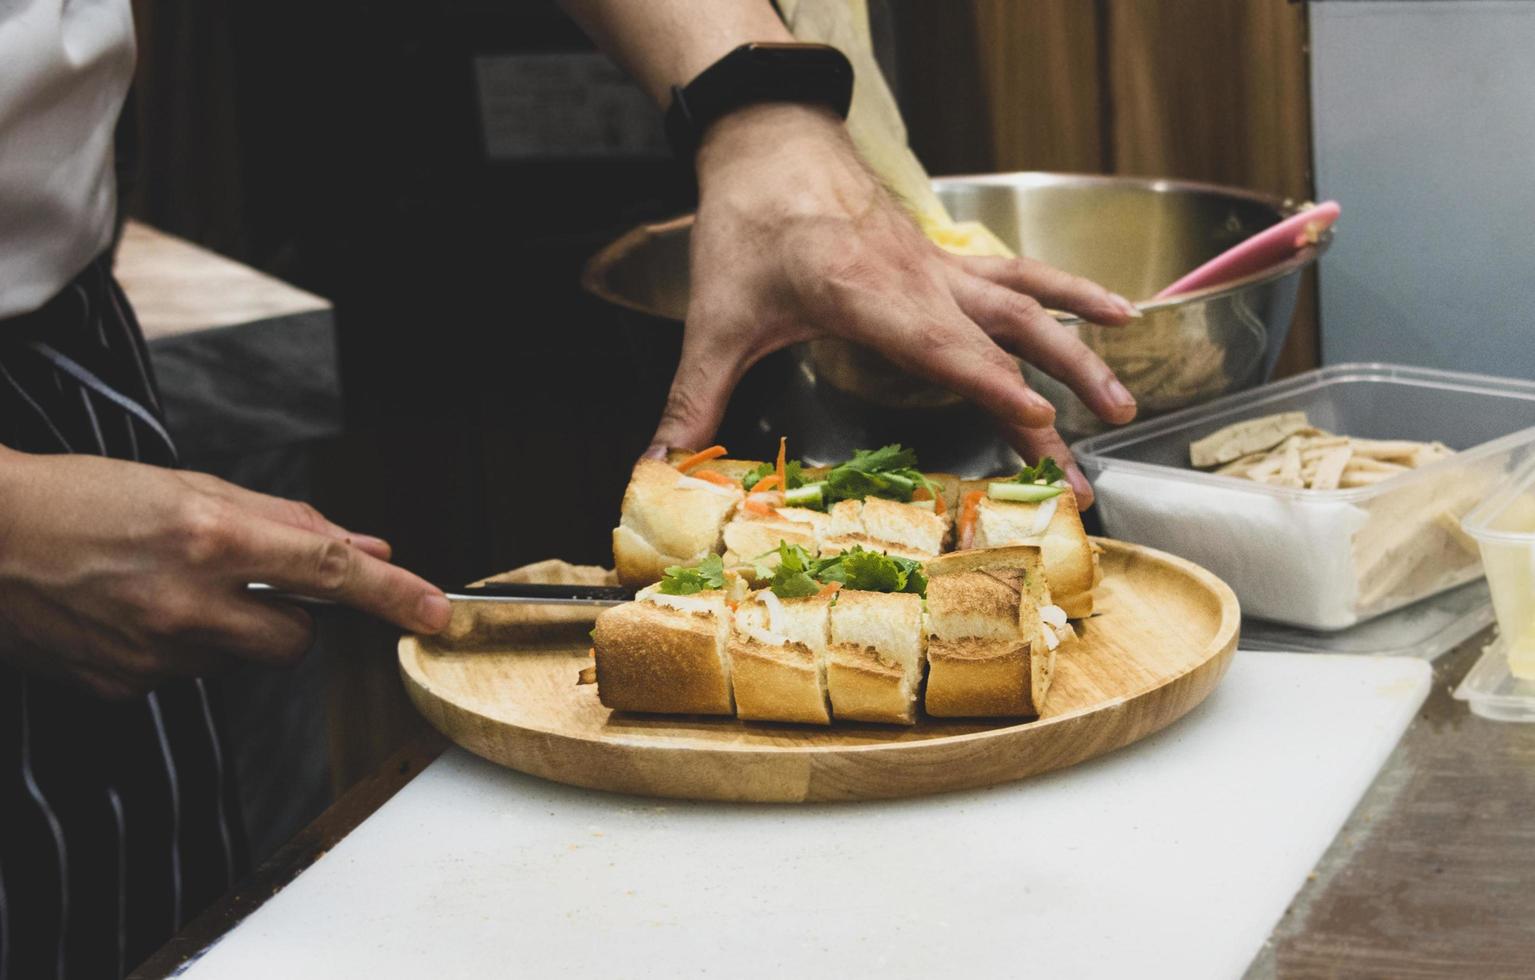 Koch bereitet Sandwich in der Küche zu foto